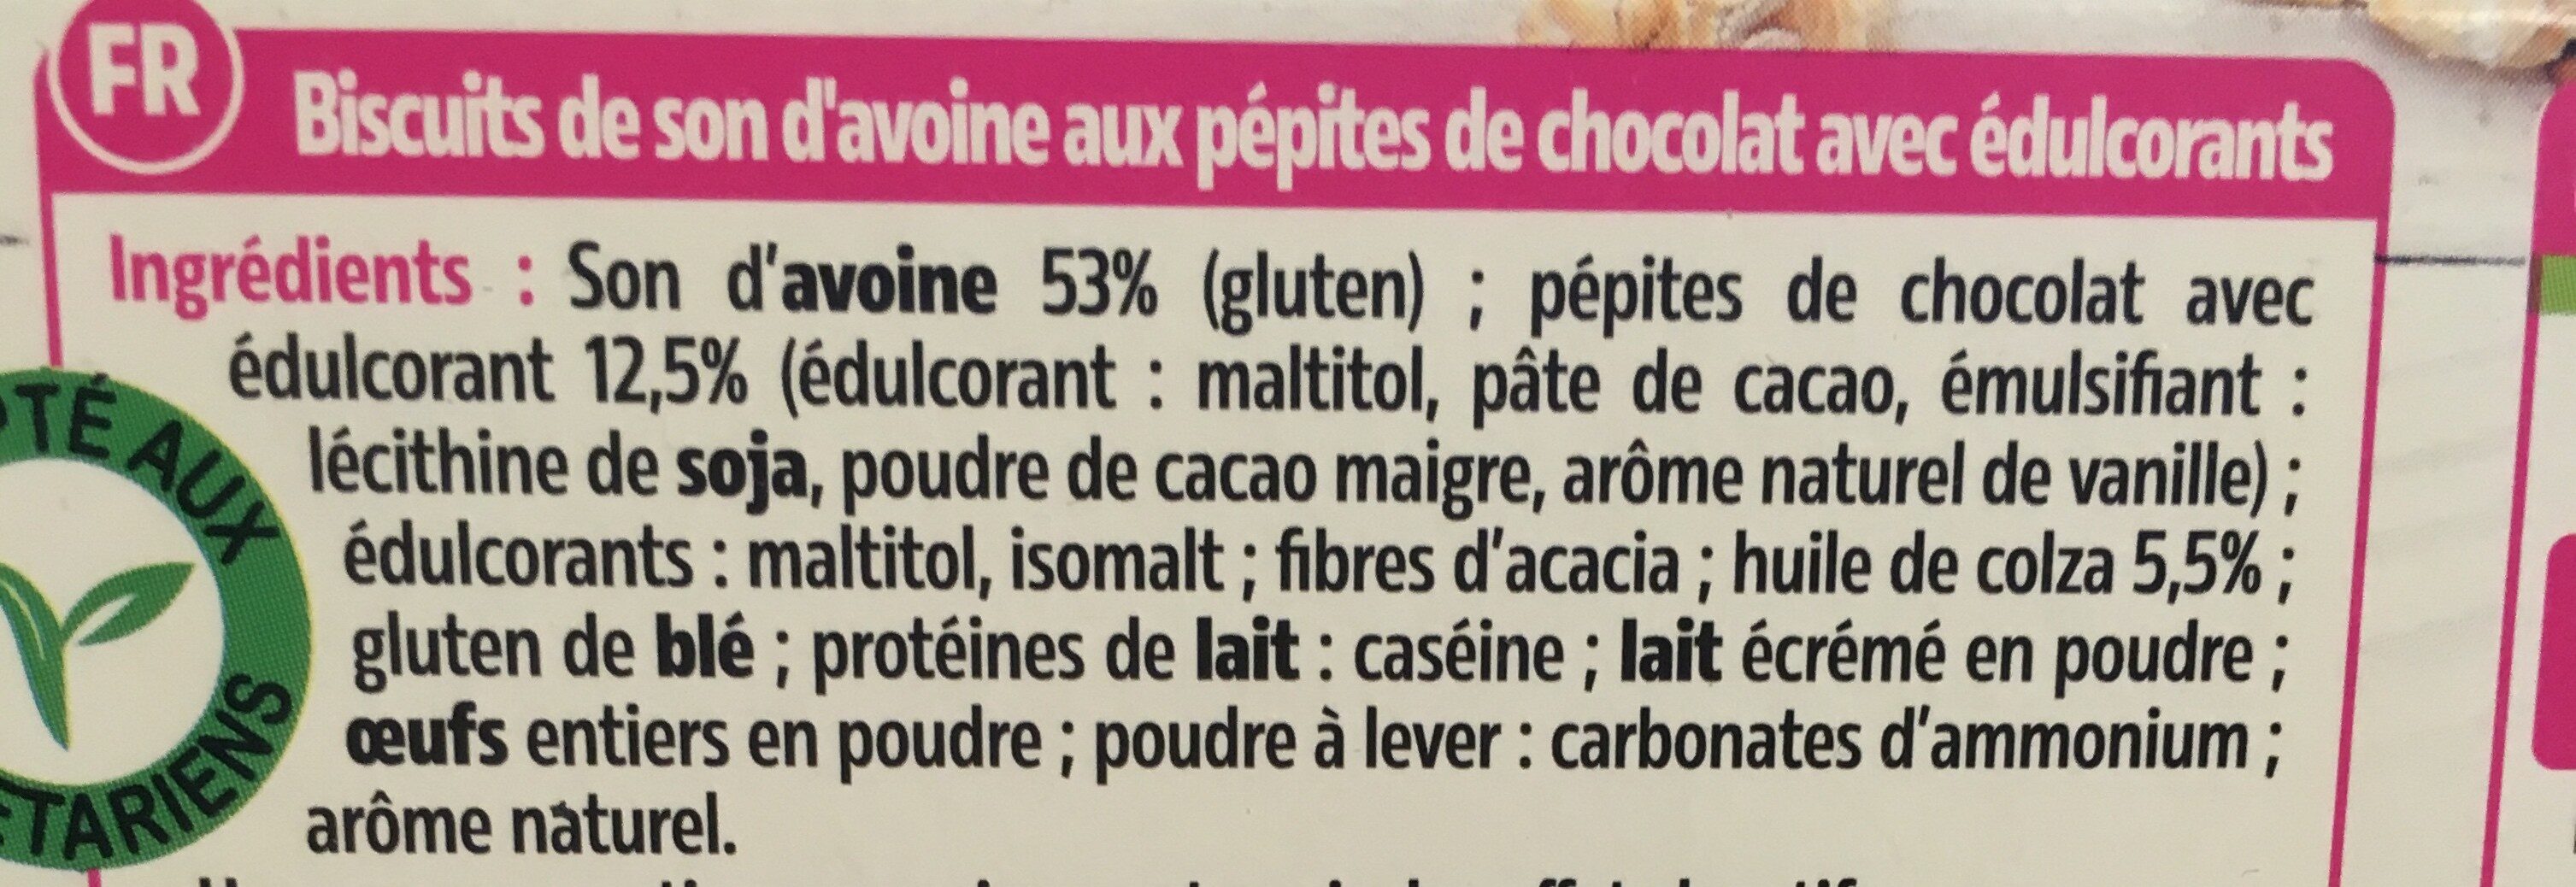 Biscuits aux pépites de chocolat - المكونات - fr